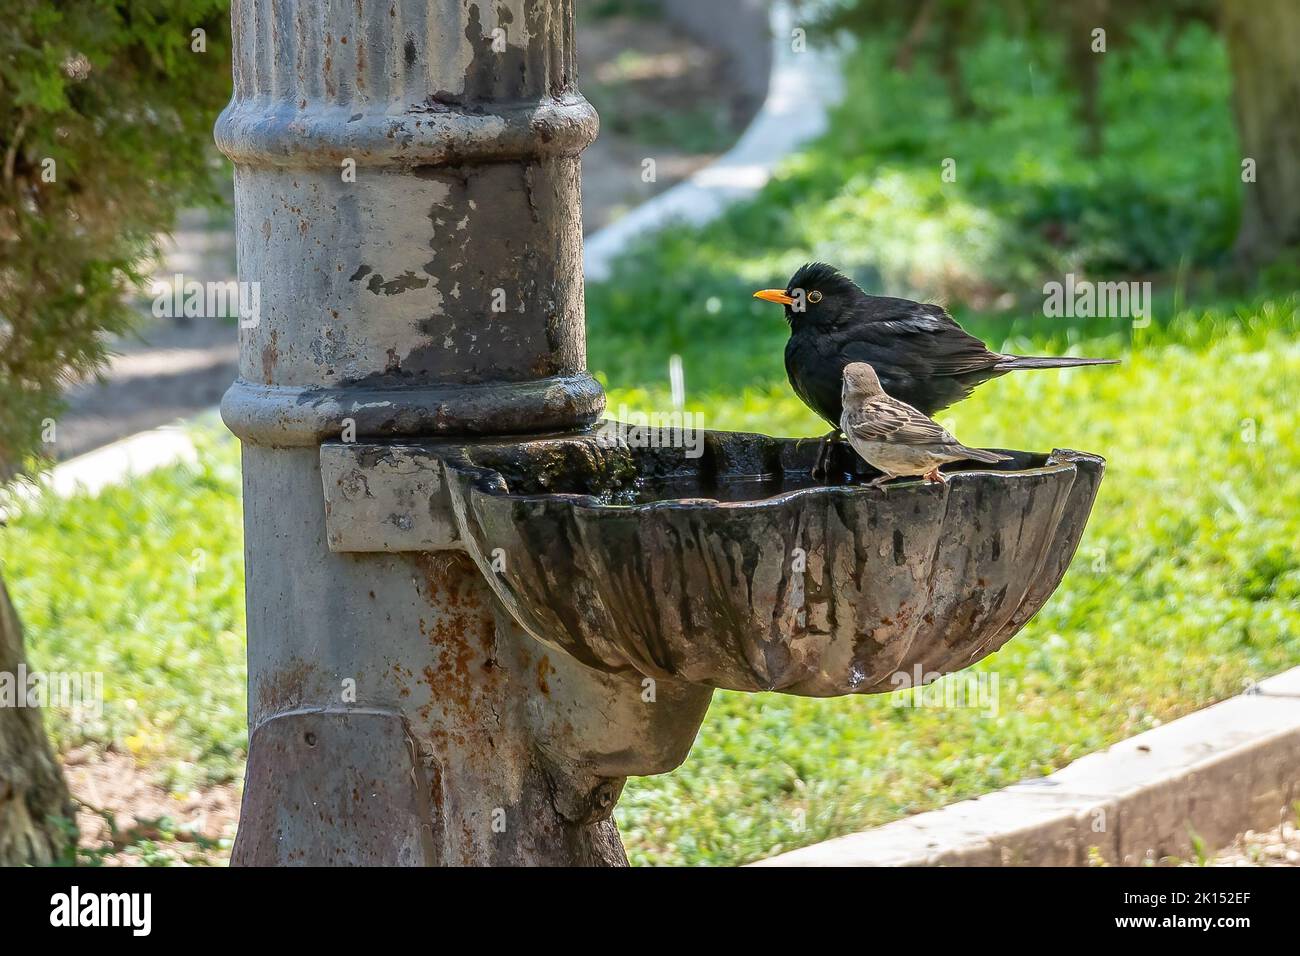 El ave negra macho (Turdus merula) se baña y bebe en una fuente pública Foto de stock